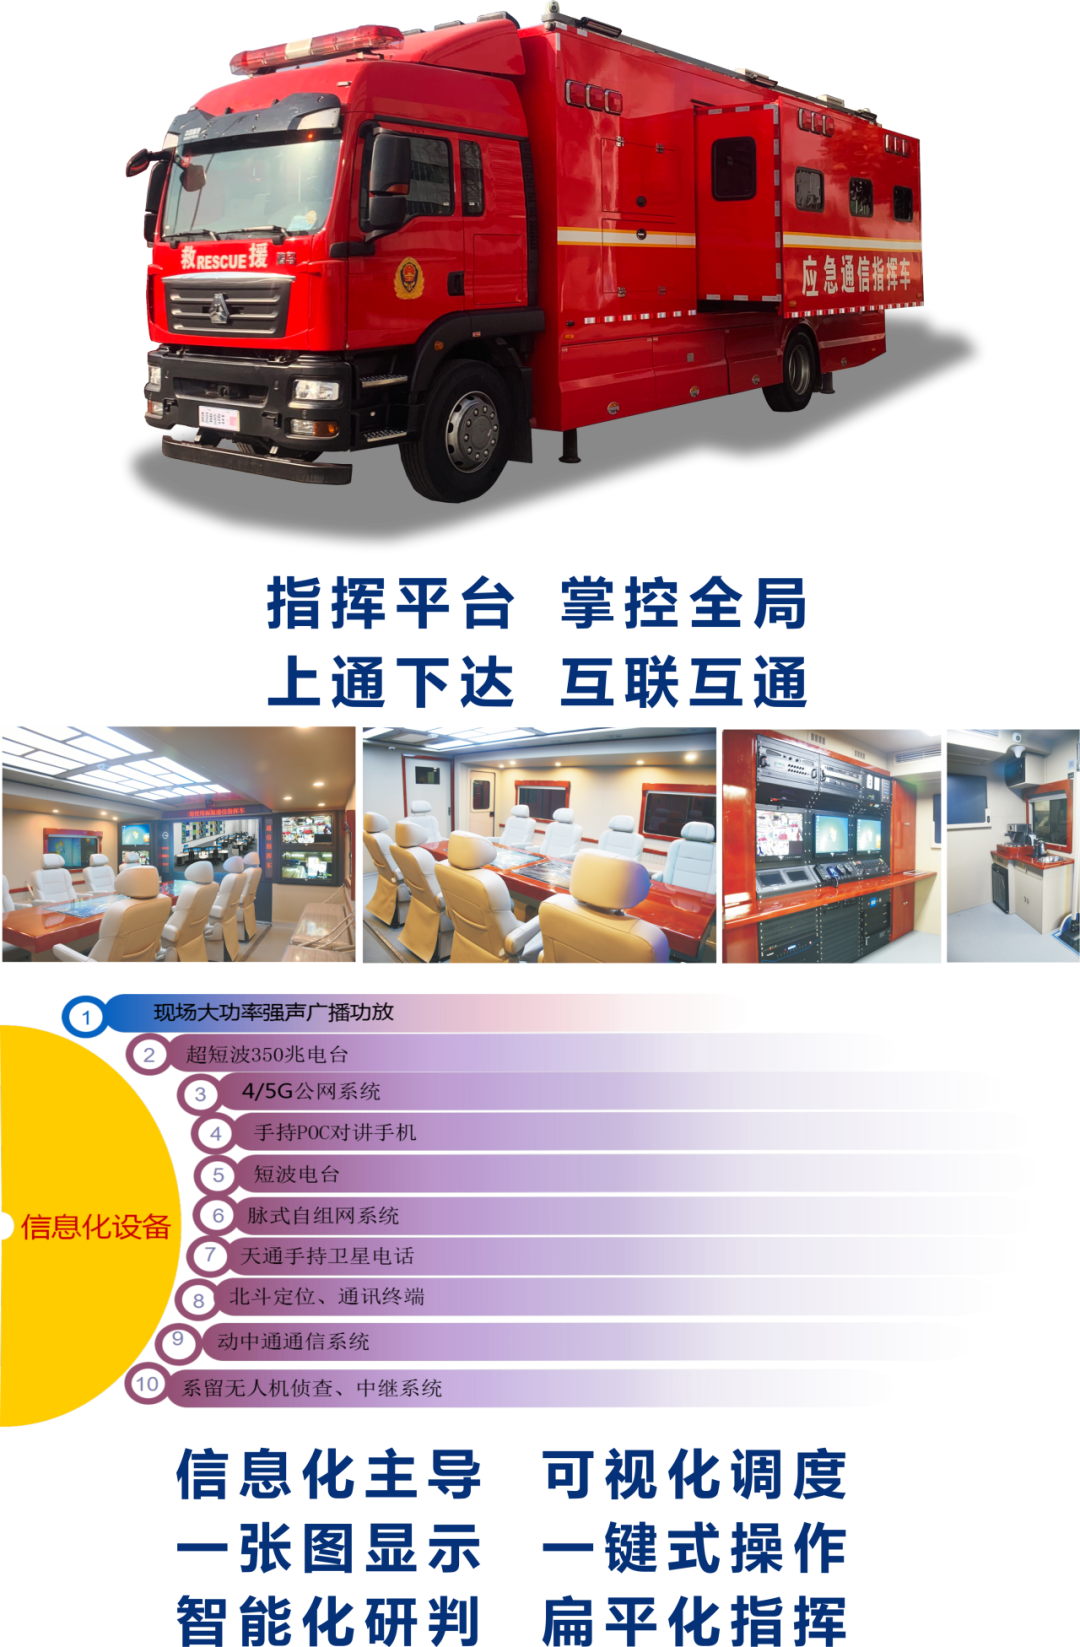 森源鸿马三款产品获评中国消防协会创新产品